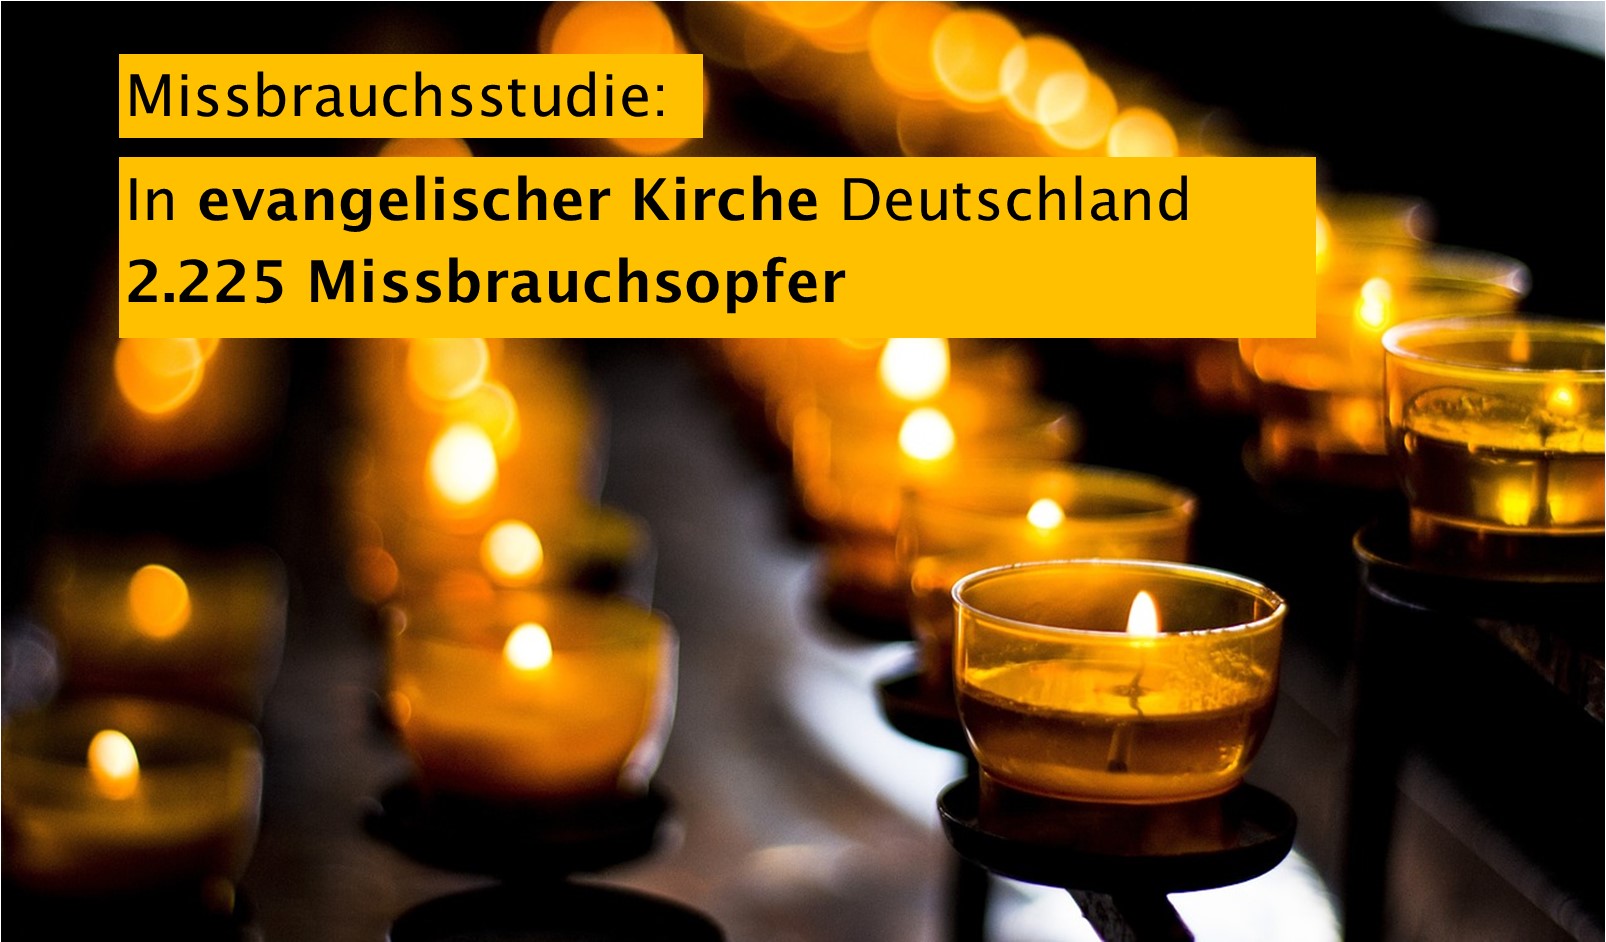 2.225 Missbrauchsopfer in evangelischer Kirche Deutschland